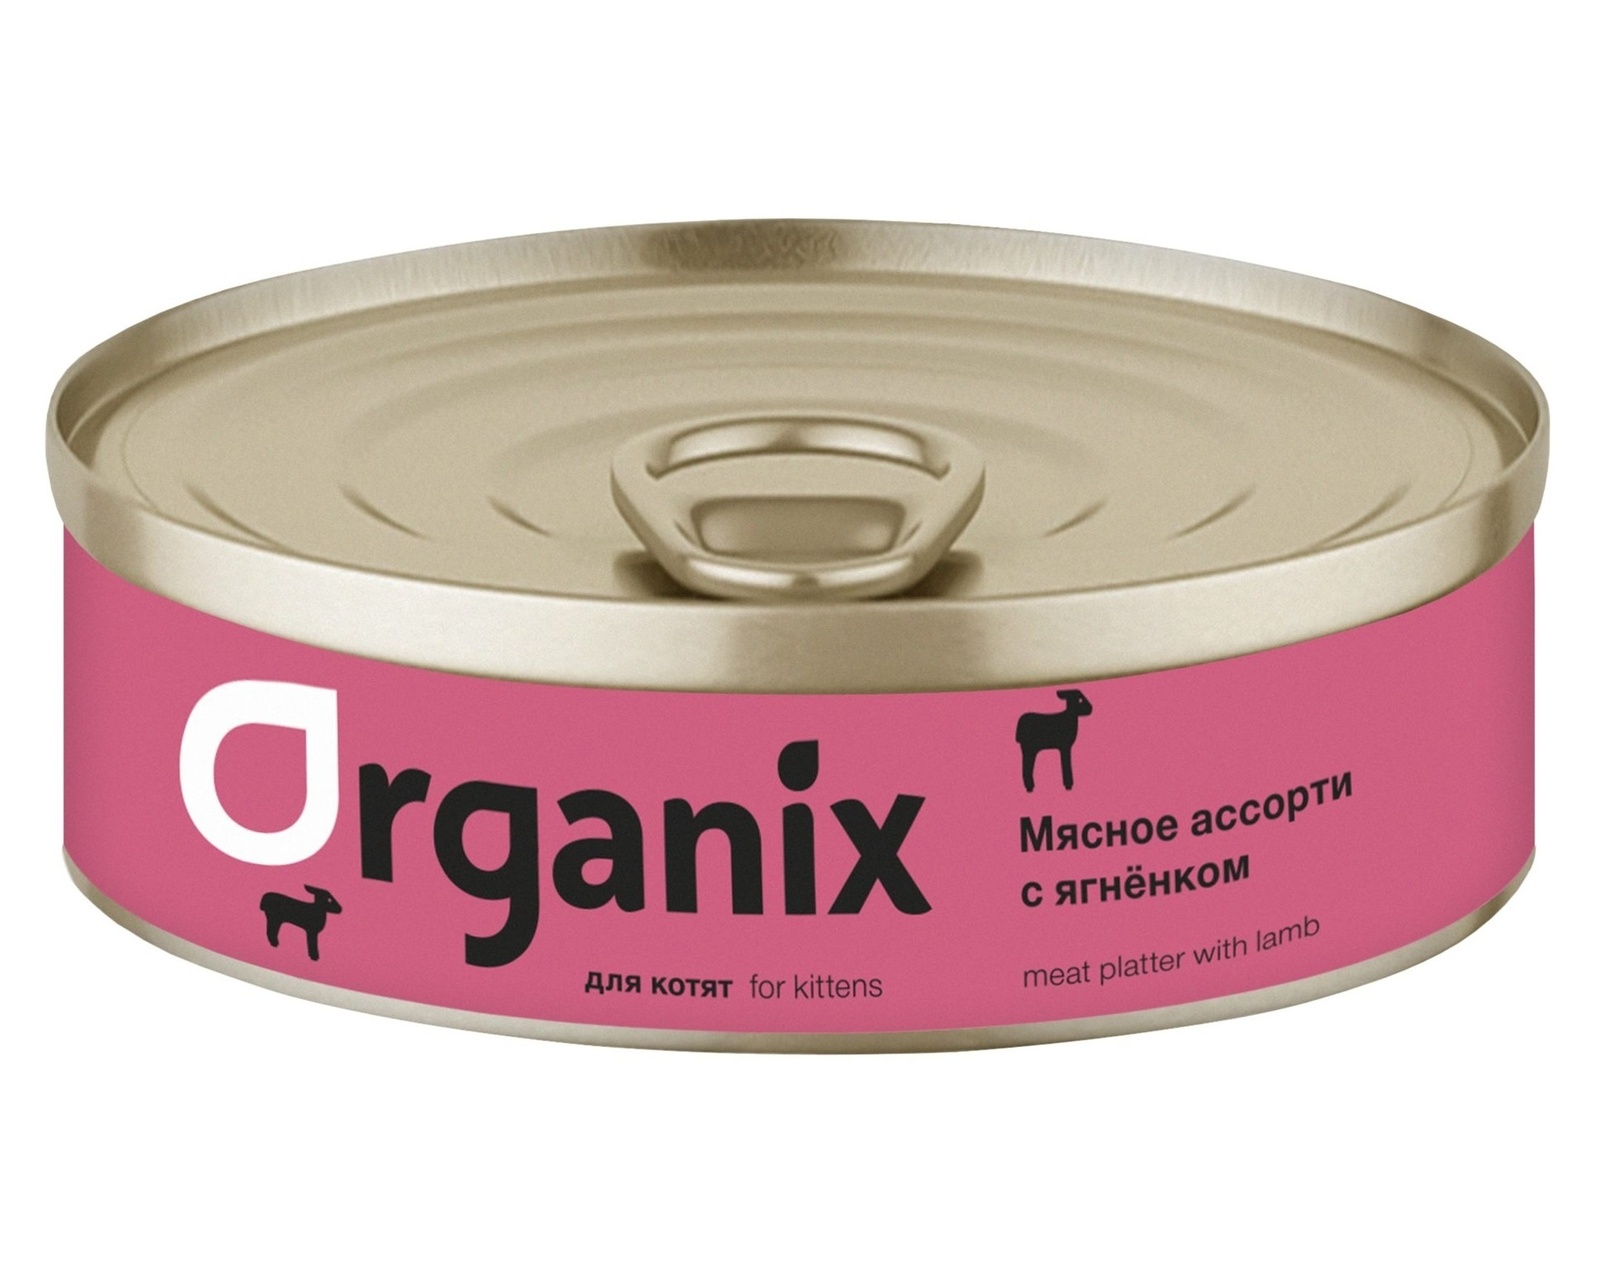 Organix консервы Organix консервы для котят Мясное ассорти с ягнёнком (100 г) консервы для котят ем без проблем суфле мясное ассорти 100 г